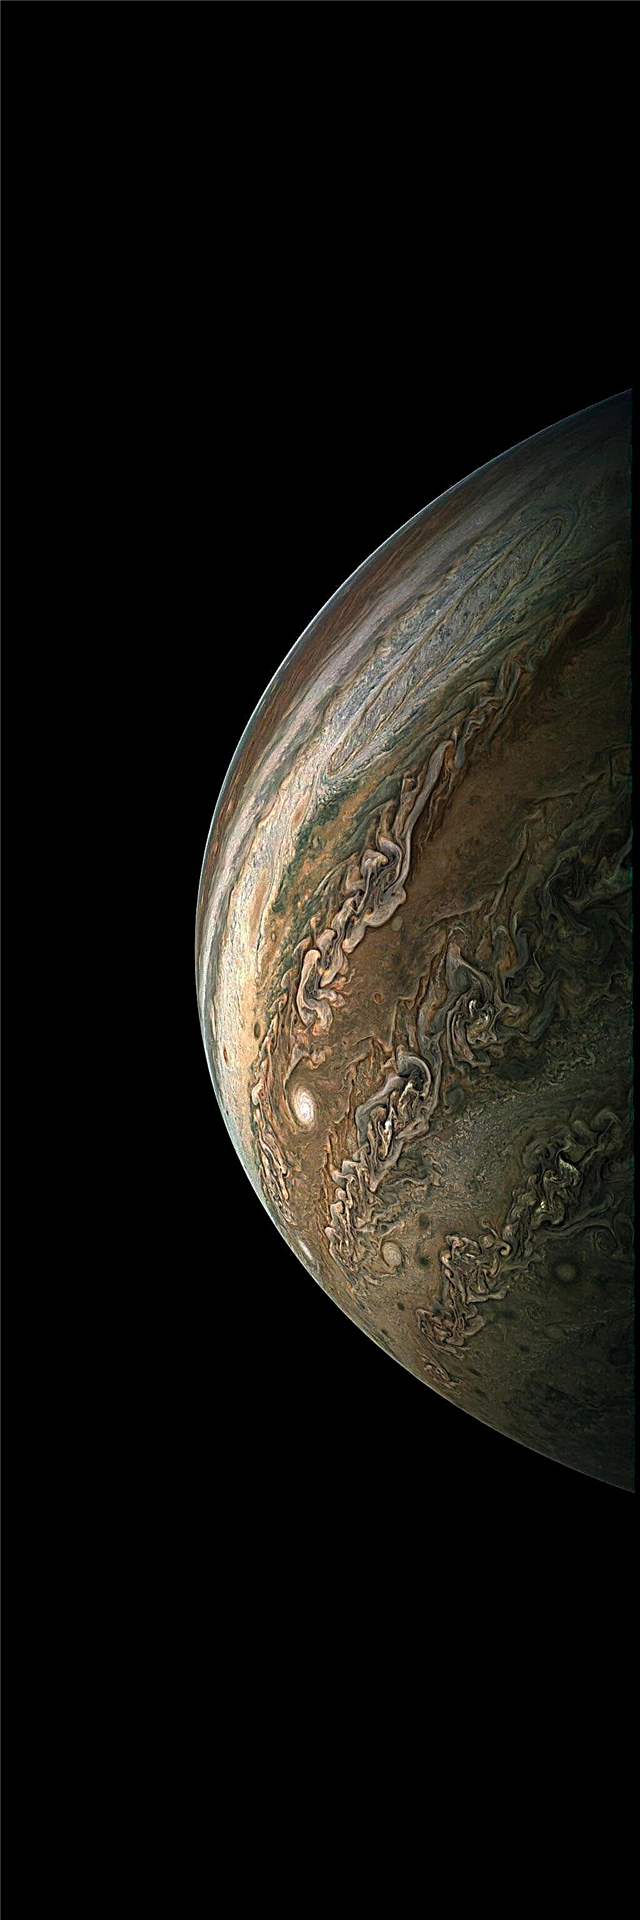 Juno Probe wykonuje 10. lot naukowy Jowisza; Obywatele produkują niesamowite obrazy